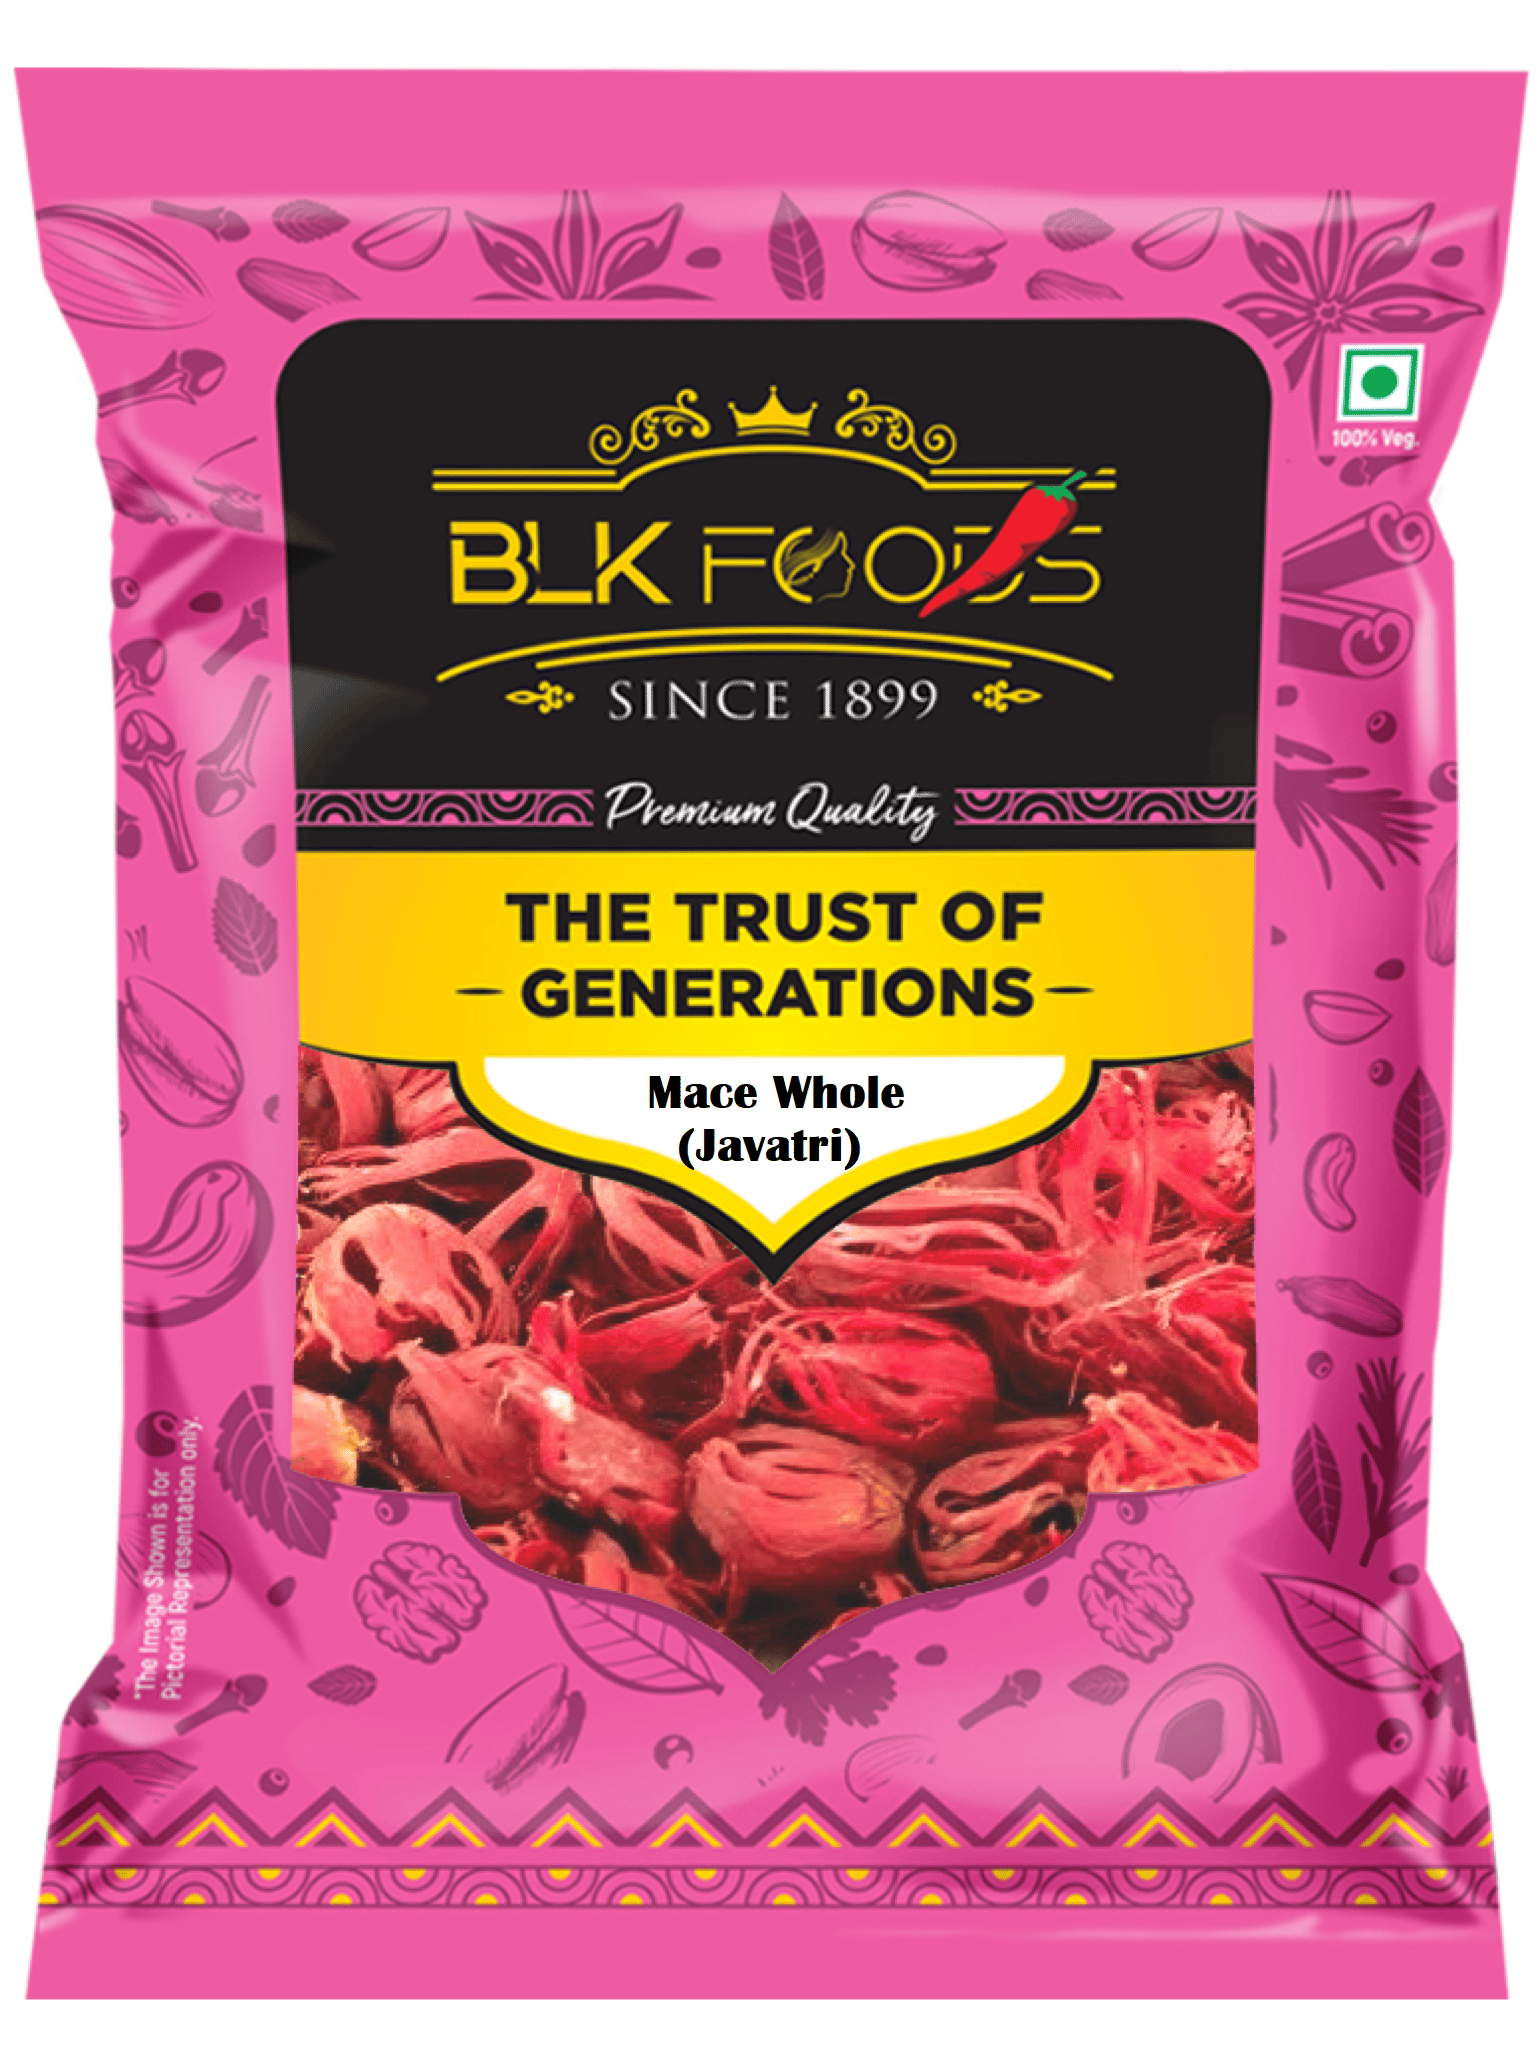 BLK Foods Natural Mace whole flower | Javitri fool| Japatri phool